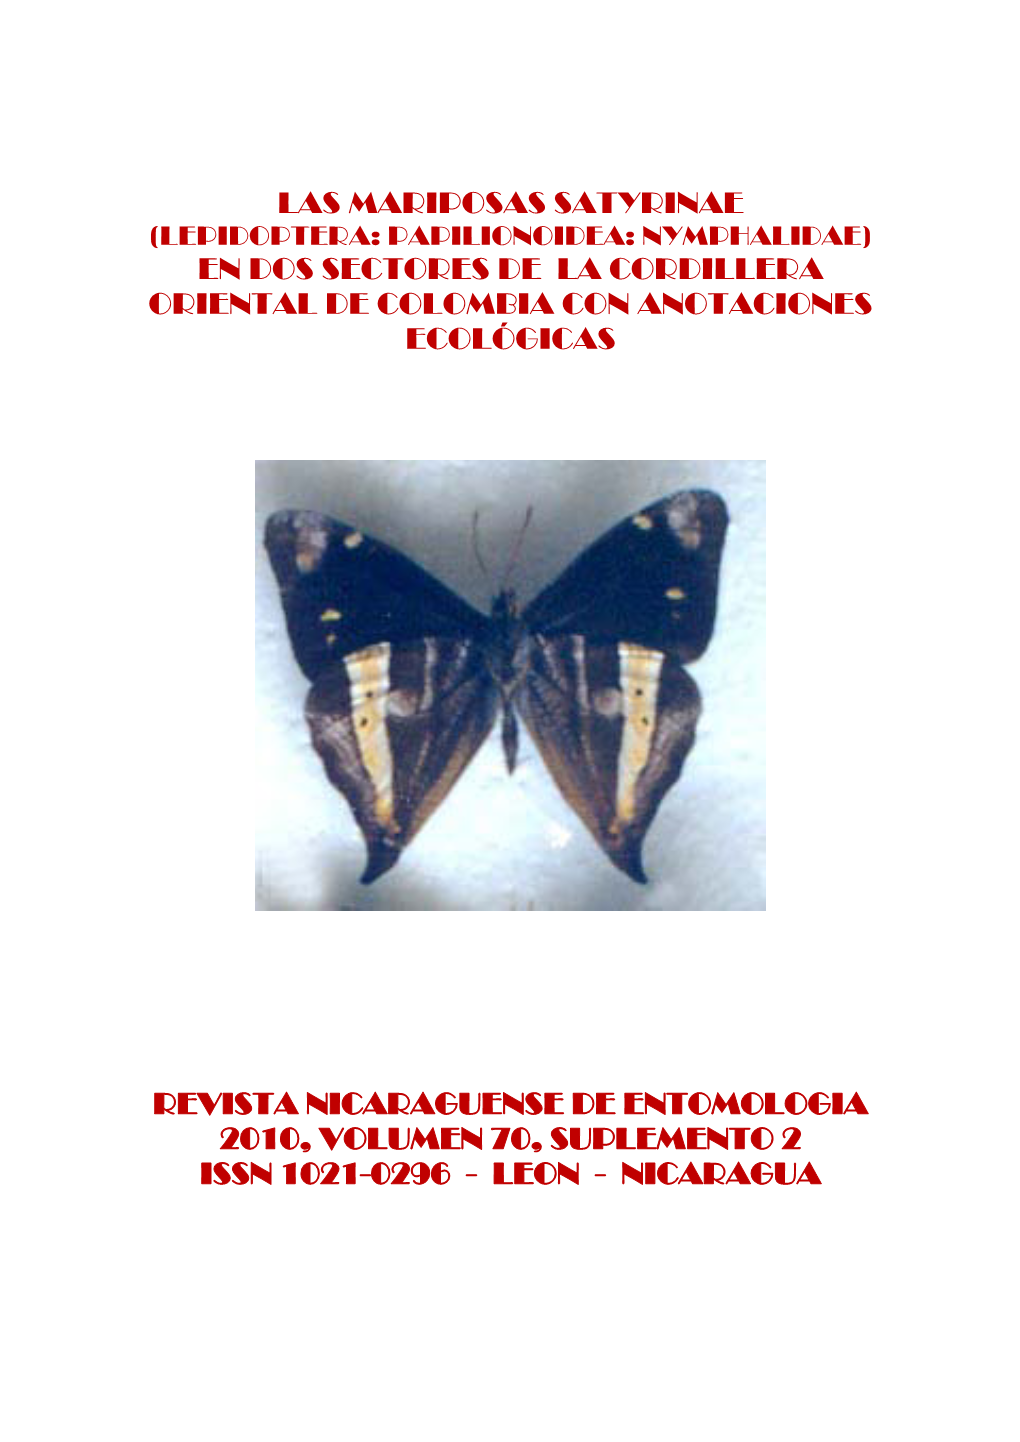 Las Mariposas Satyrinae (Lepidoptera: Papilionoidea: Nymphalidae) En Dos Sectores De La Cordillera Oriental De Colombia Con Anotaciones Ecológicas